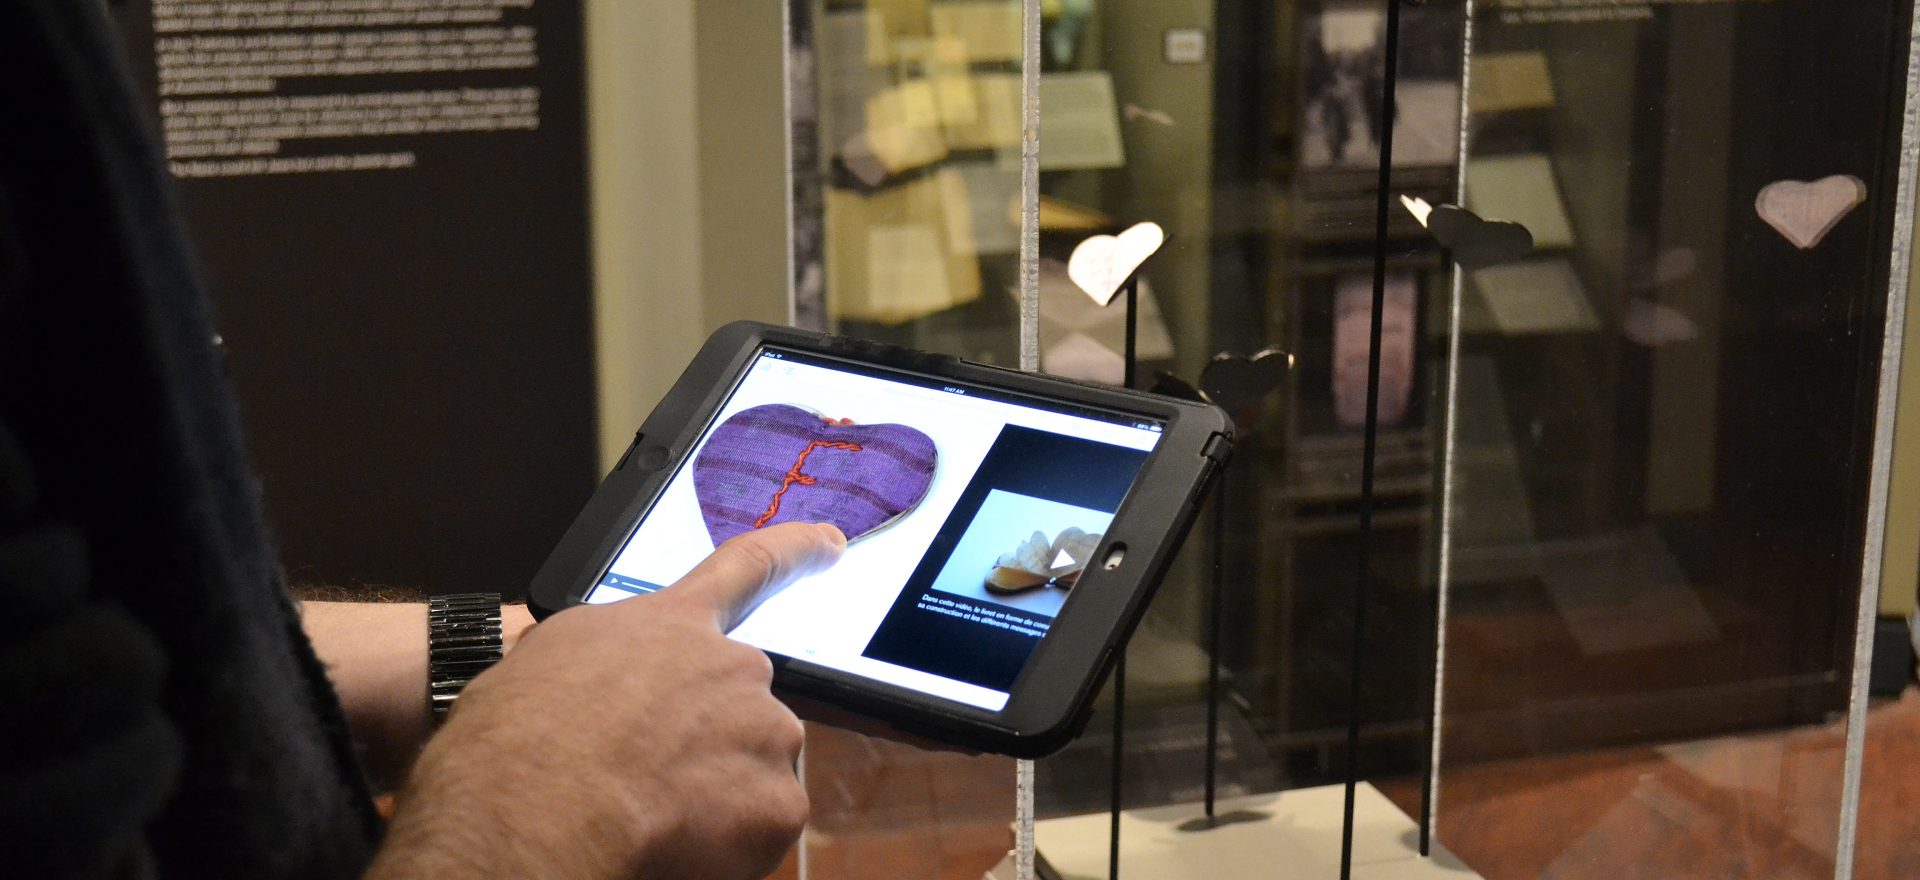 Application de visite pour tablette du Musée de l'Holocauste Montréal